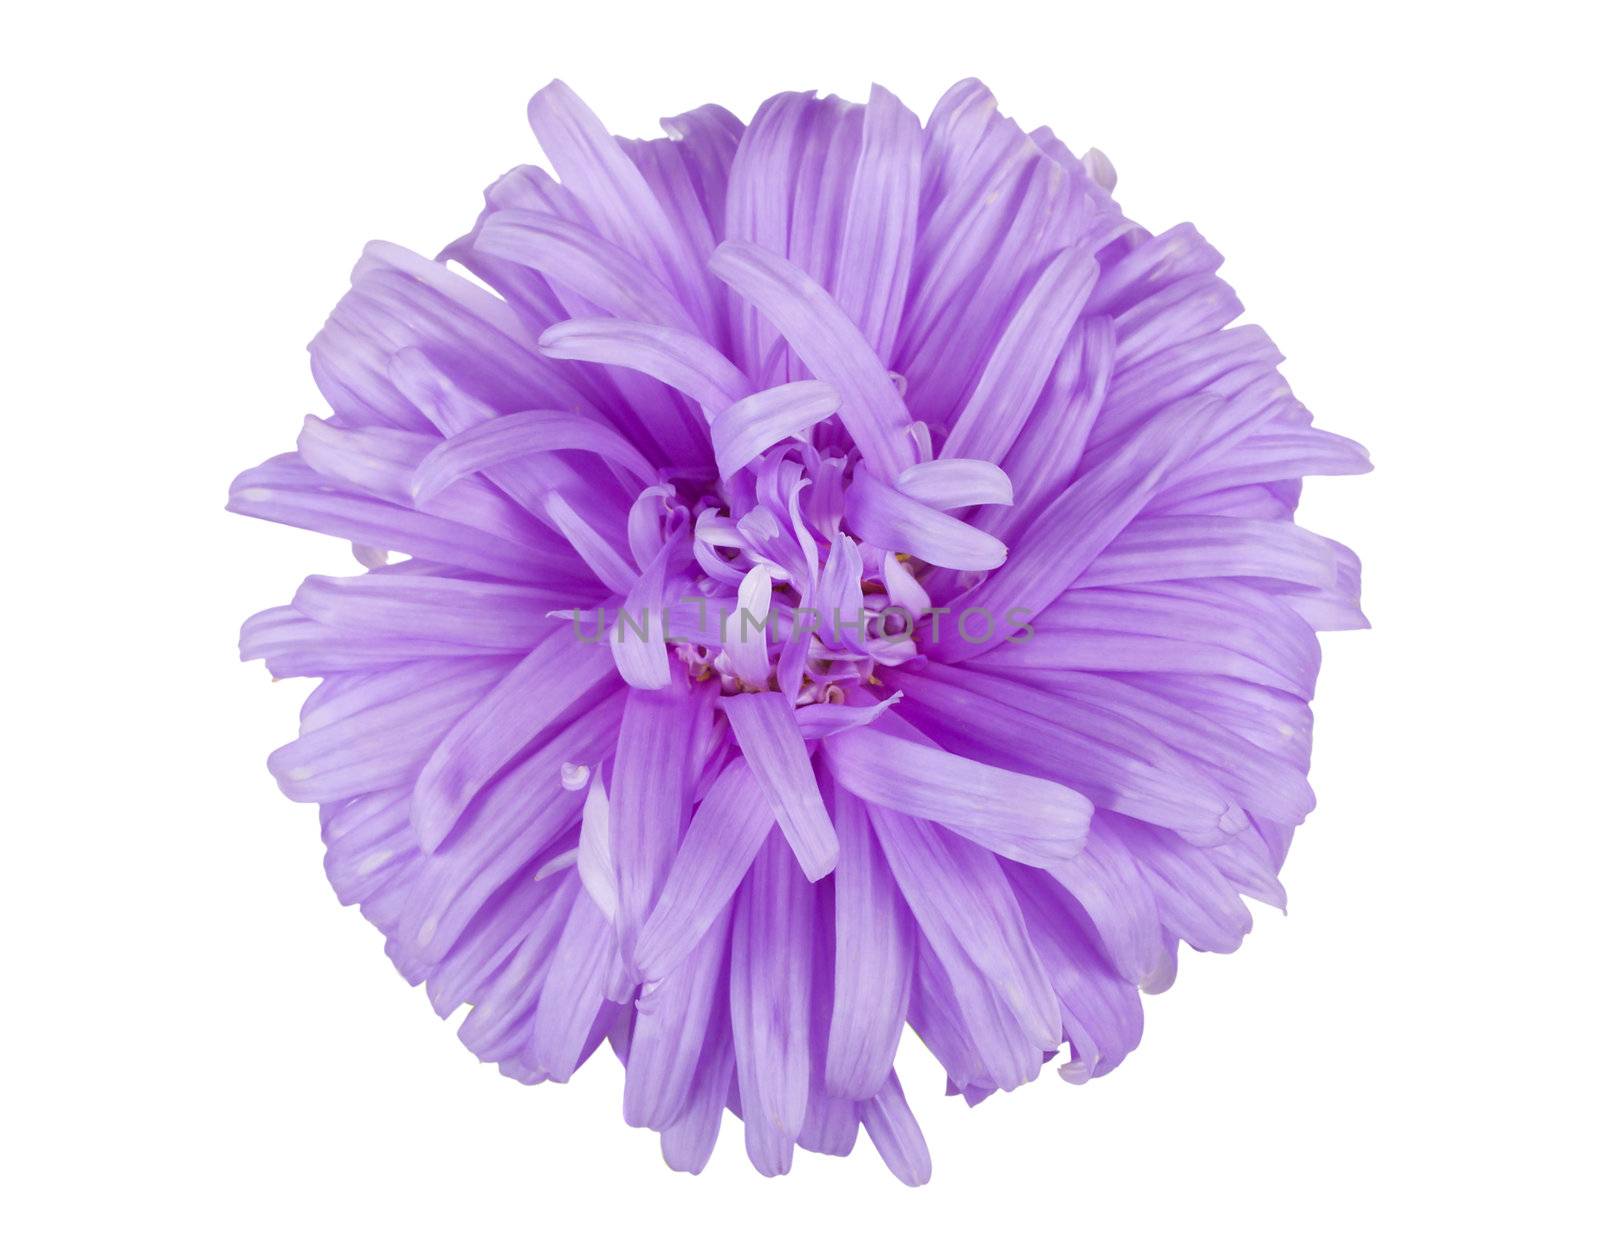 violet aster flower by Alekcey